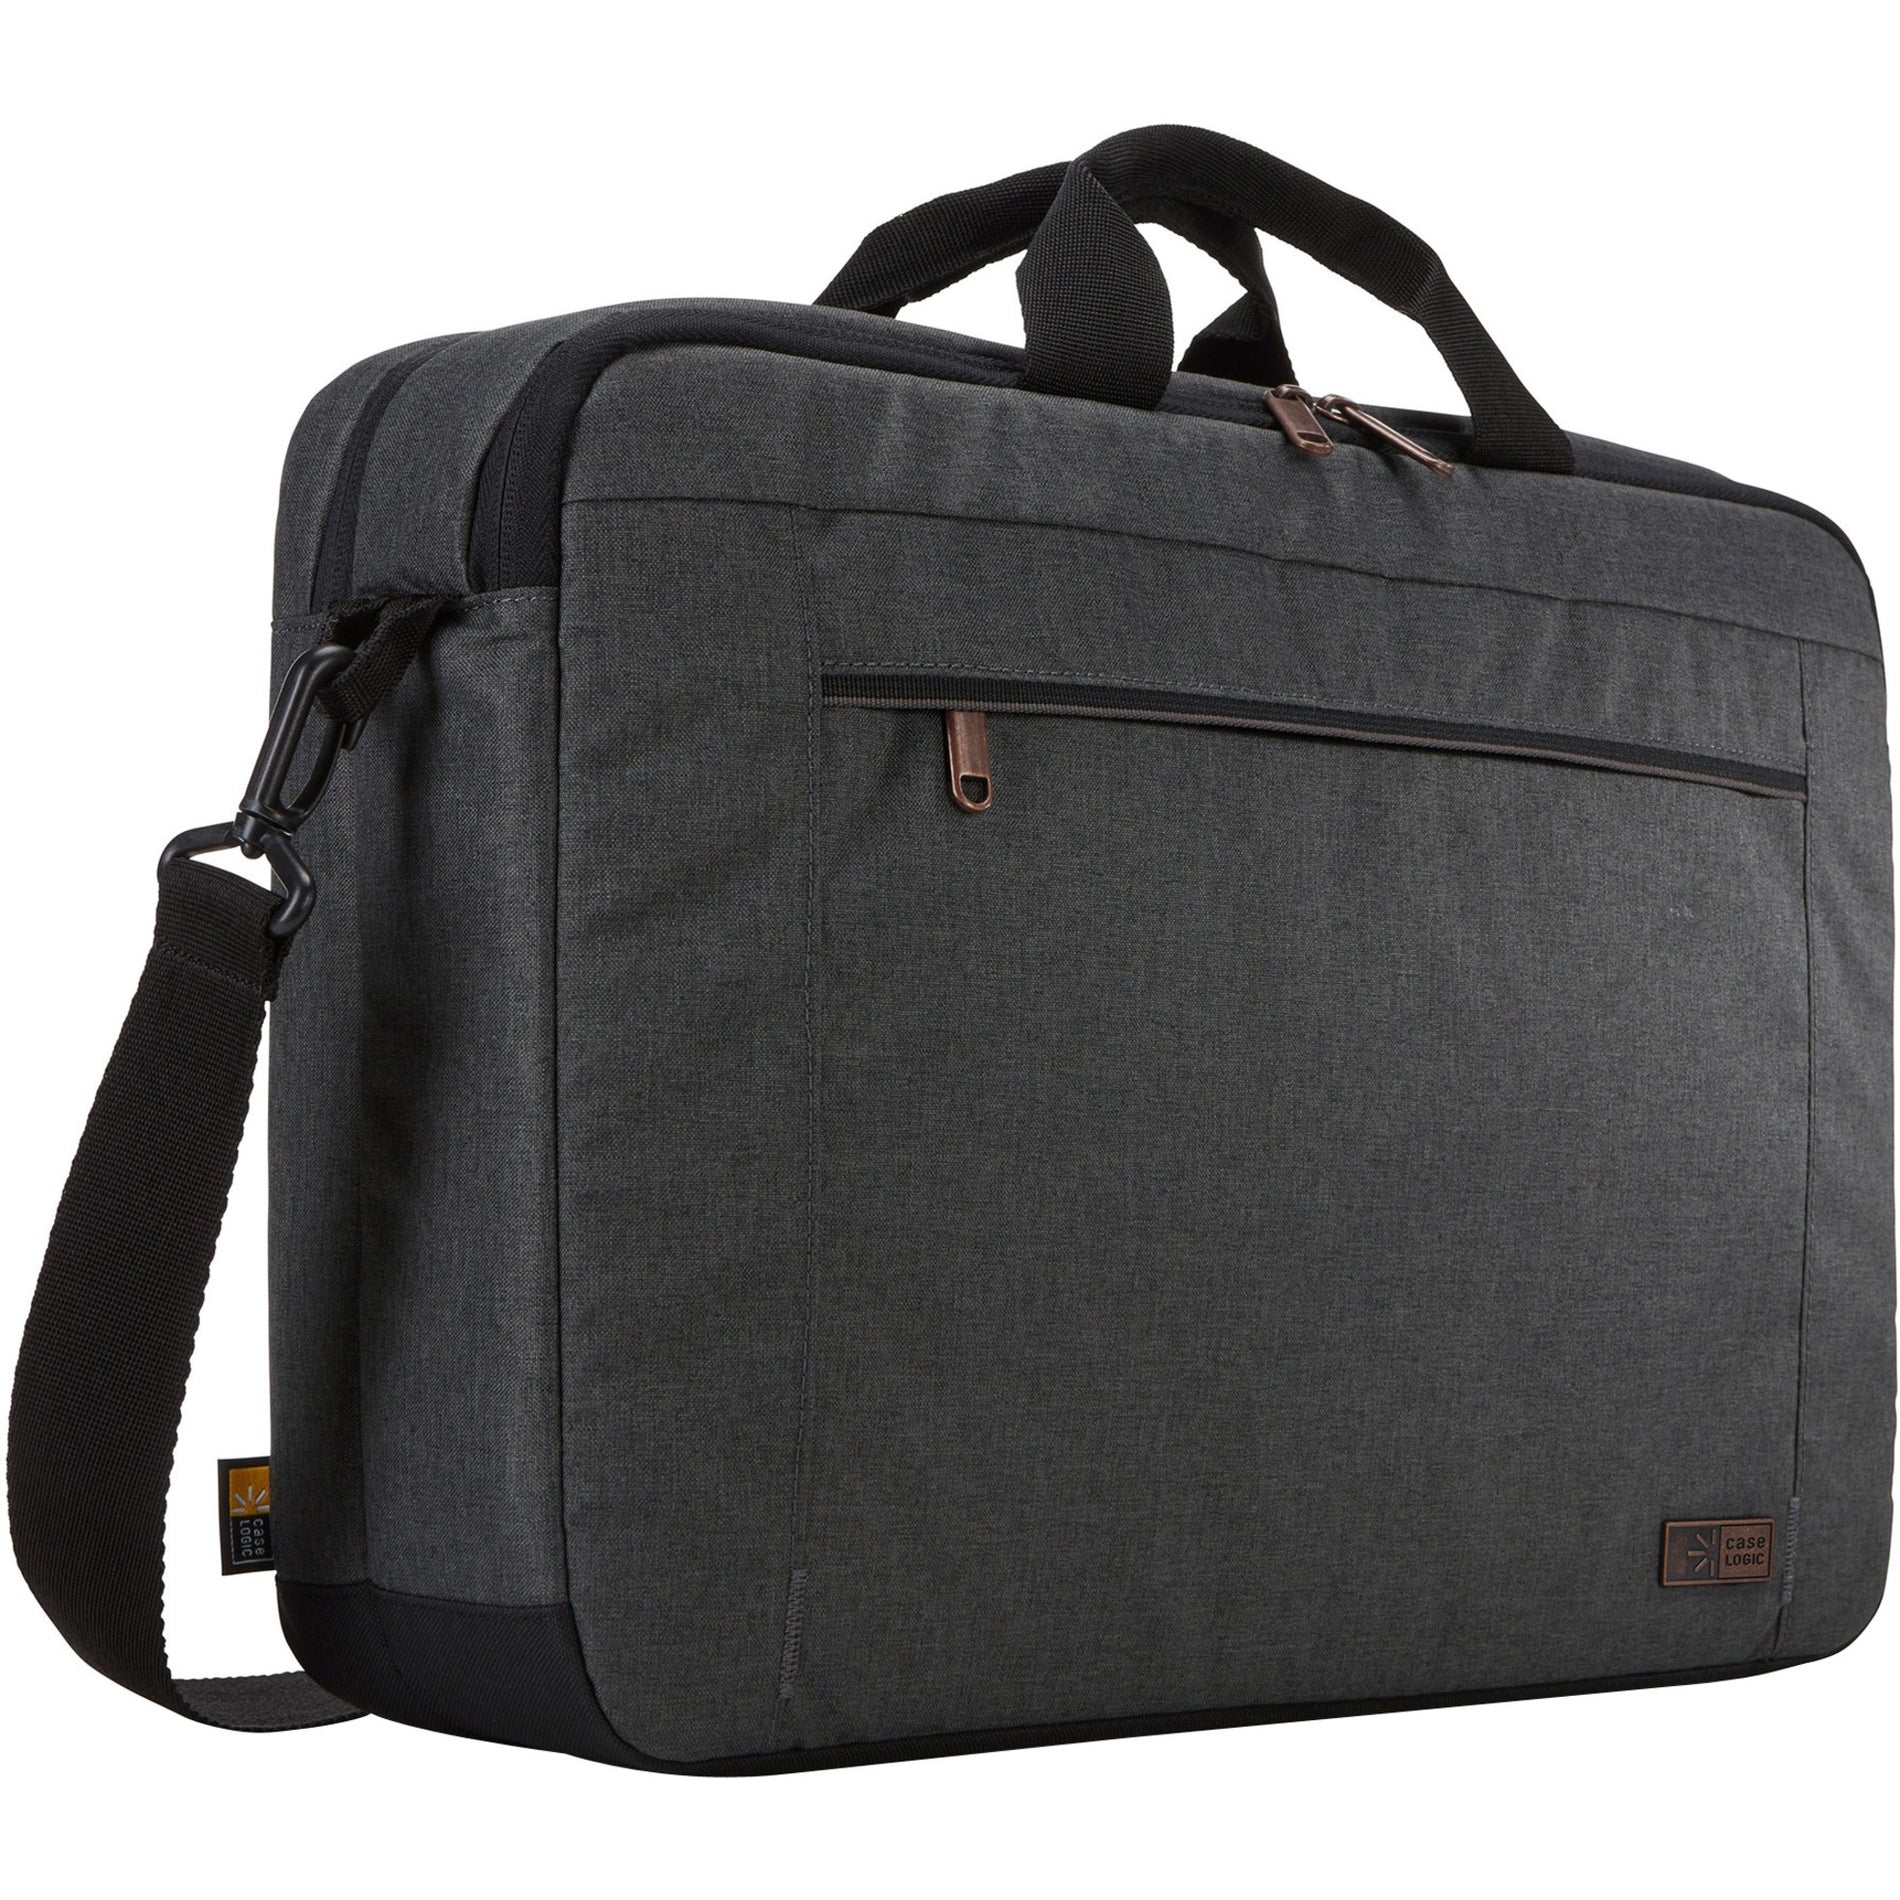 Case Logic Era 15.6" Full Size Shoulder Bag - Obsidian [Discontinued]